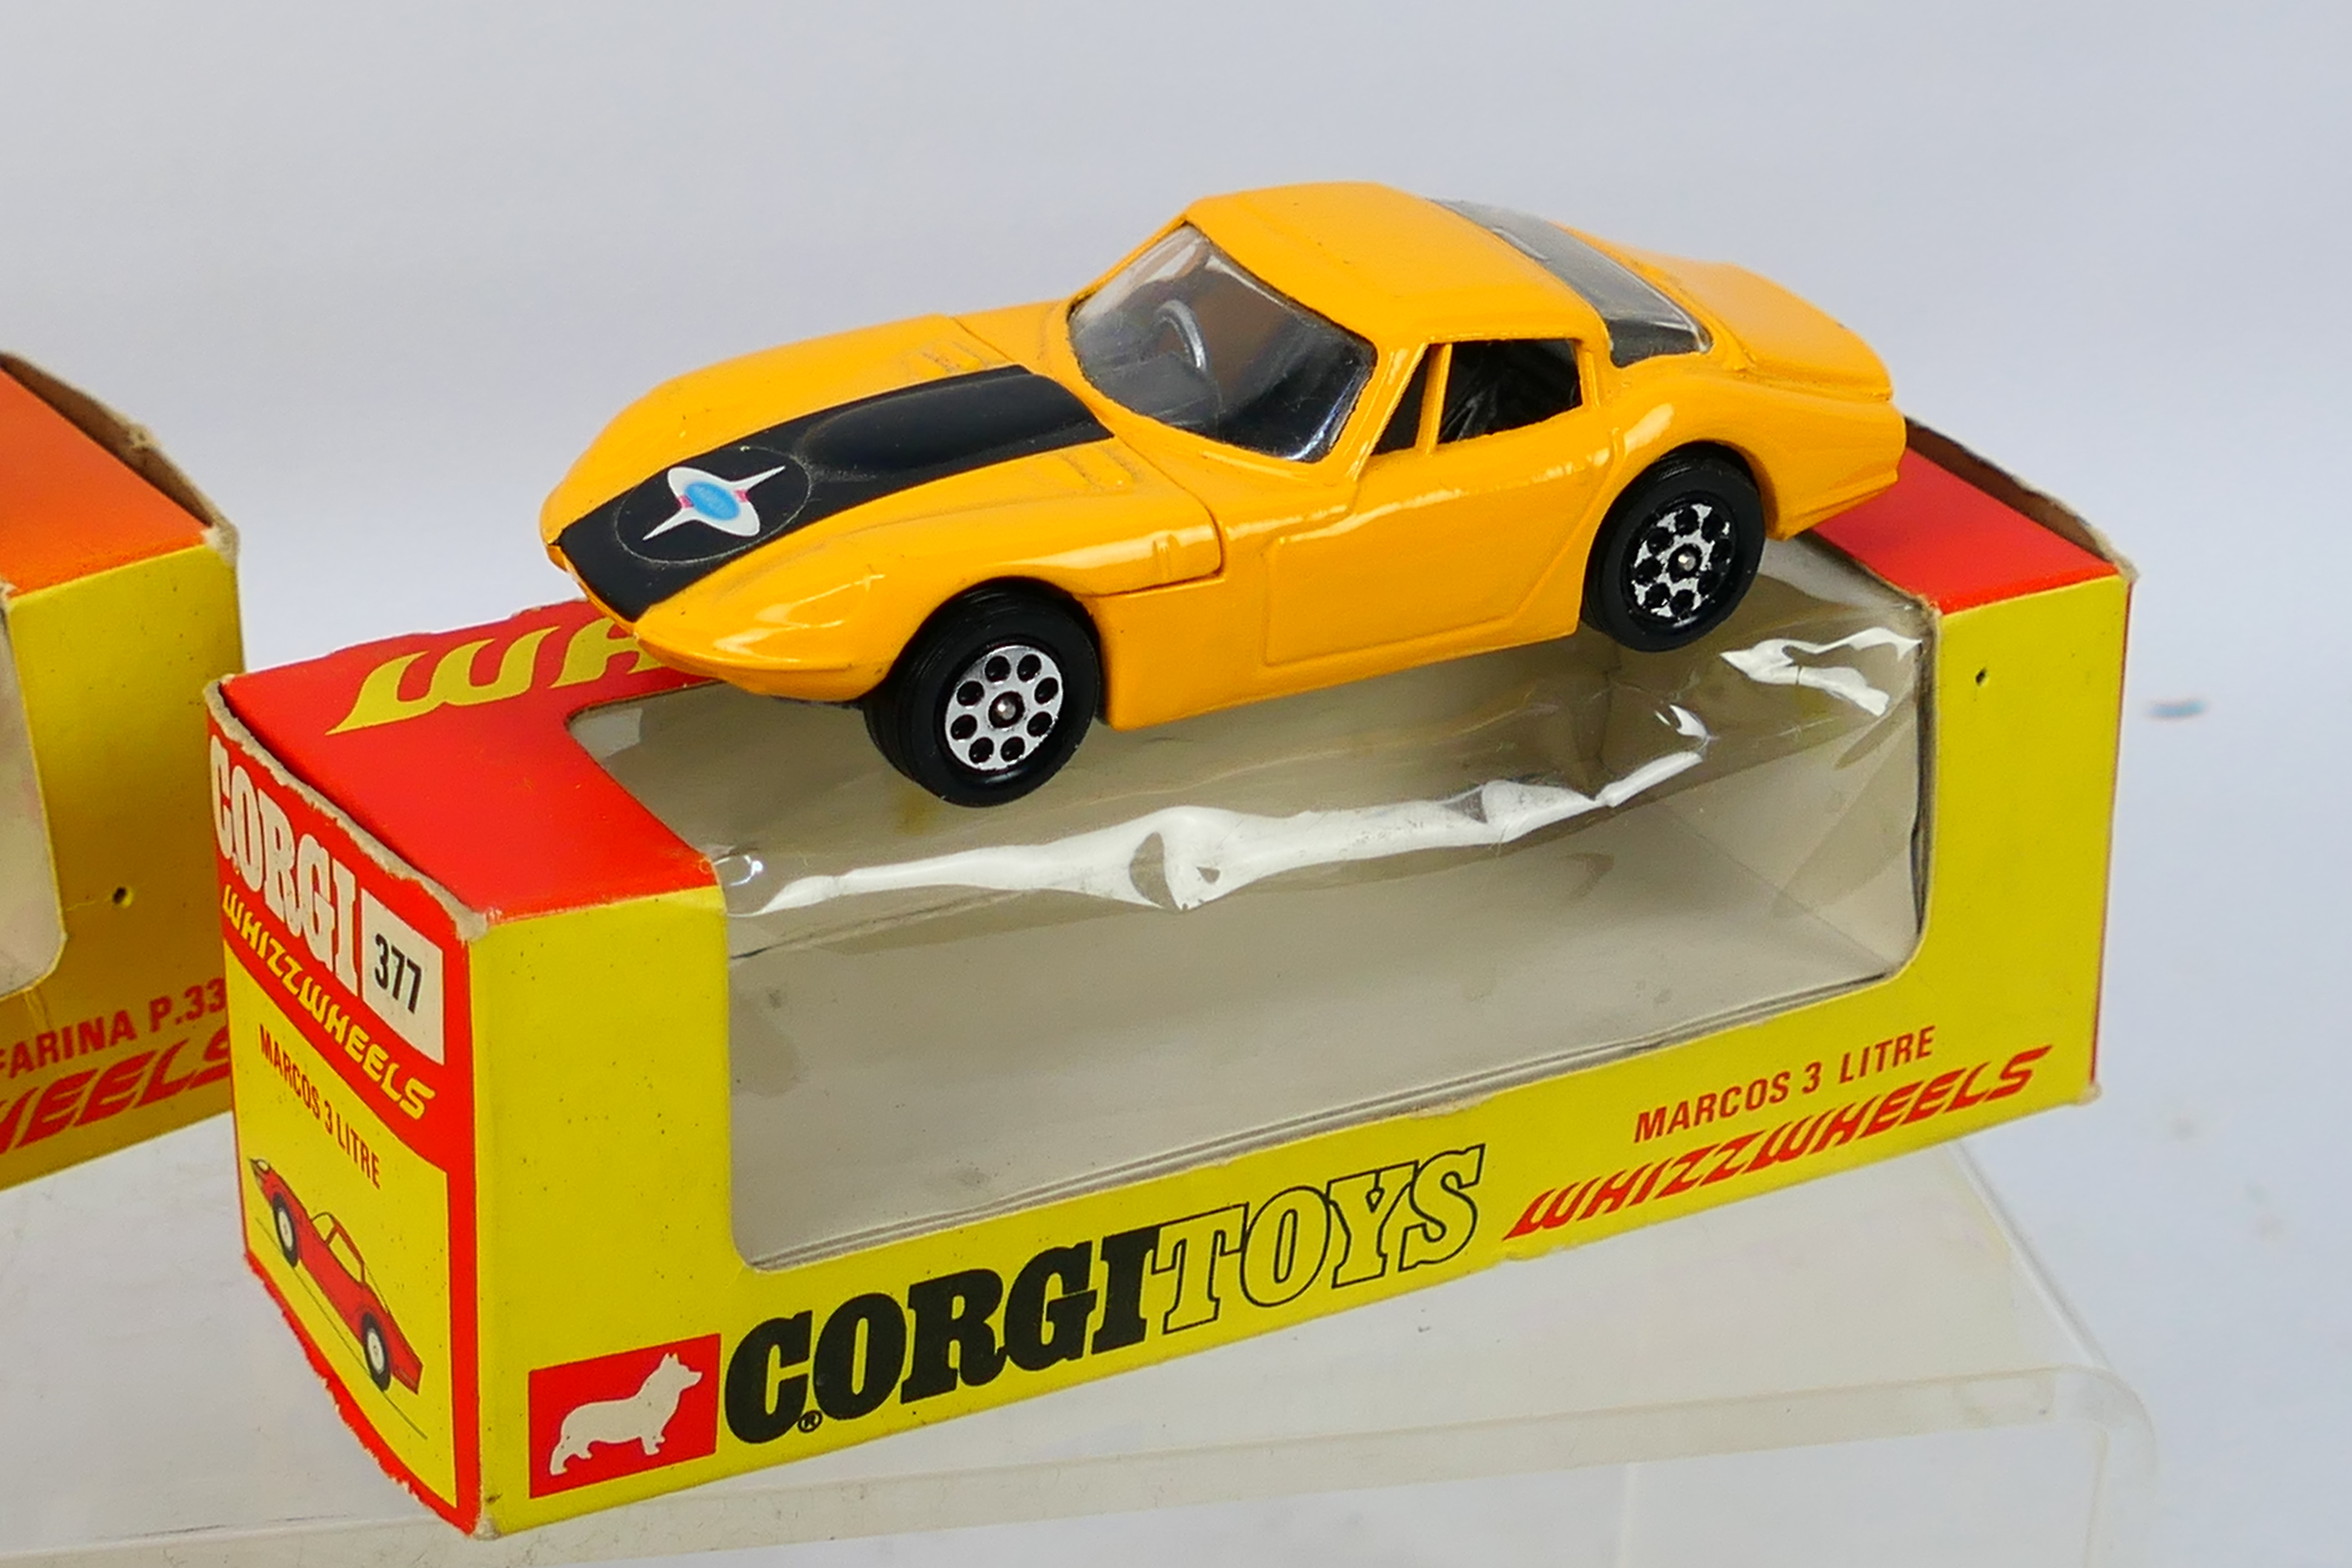 Corgi - 3 x boxed models, Marcos 3 Litre # 377, Alfa Romeo P.33 # 380 and Porsche 917 # 385. - Image 7 of 8